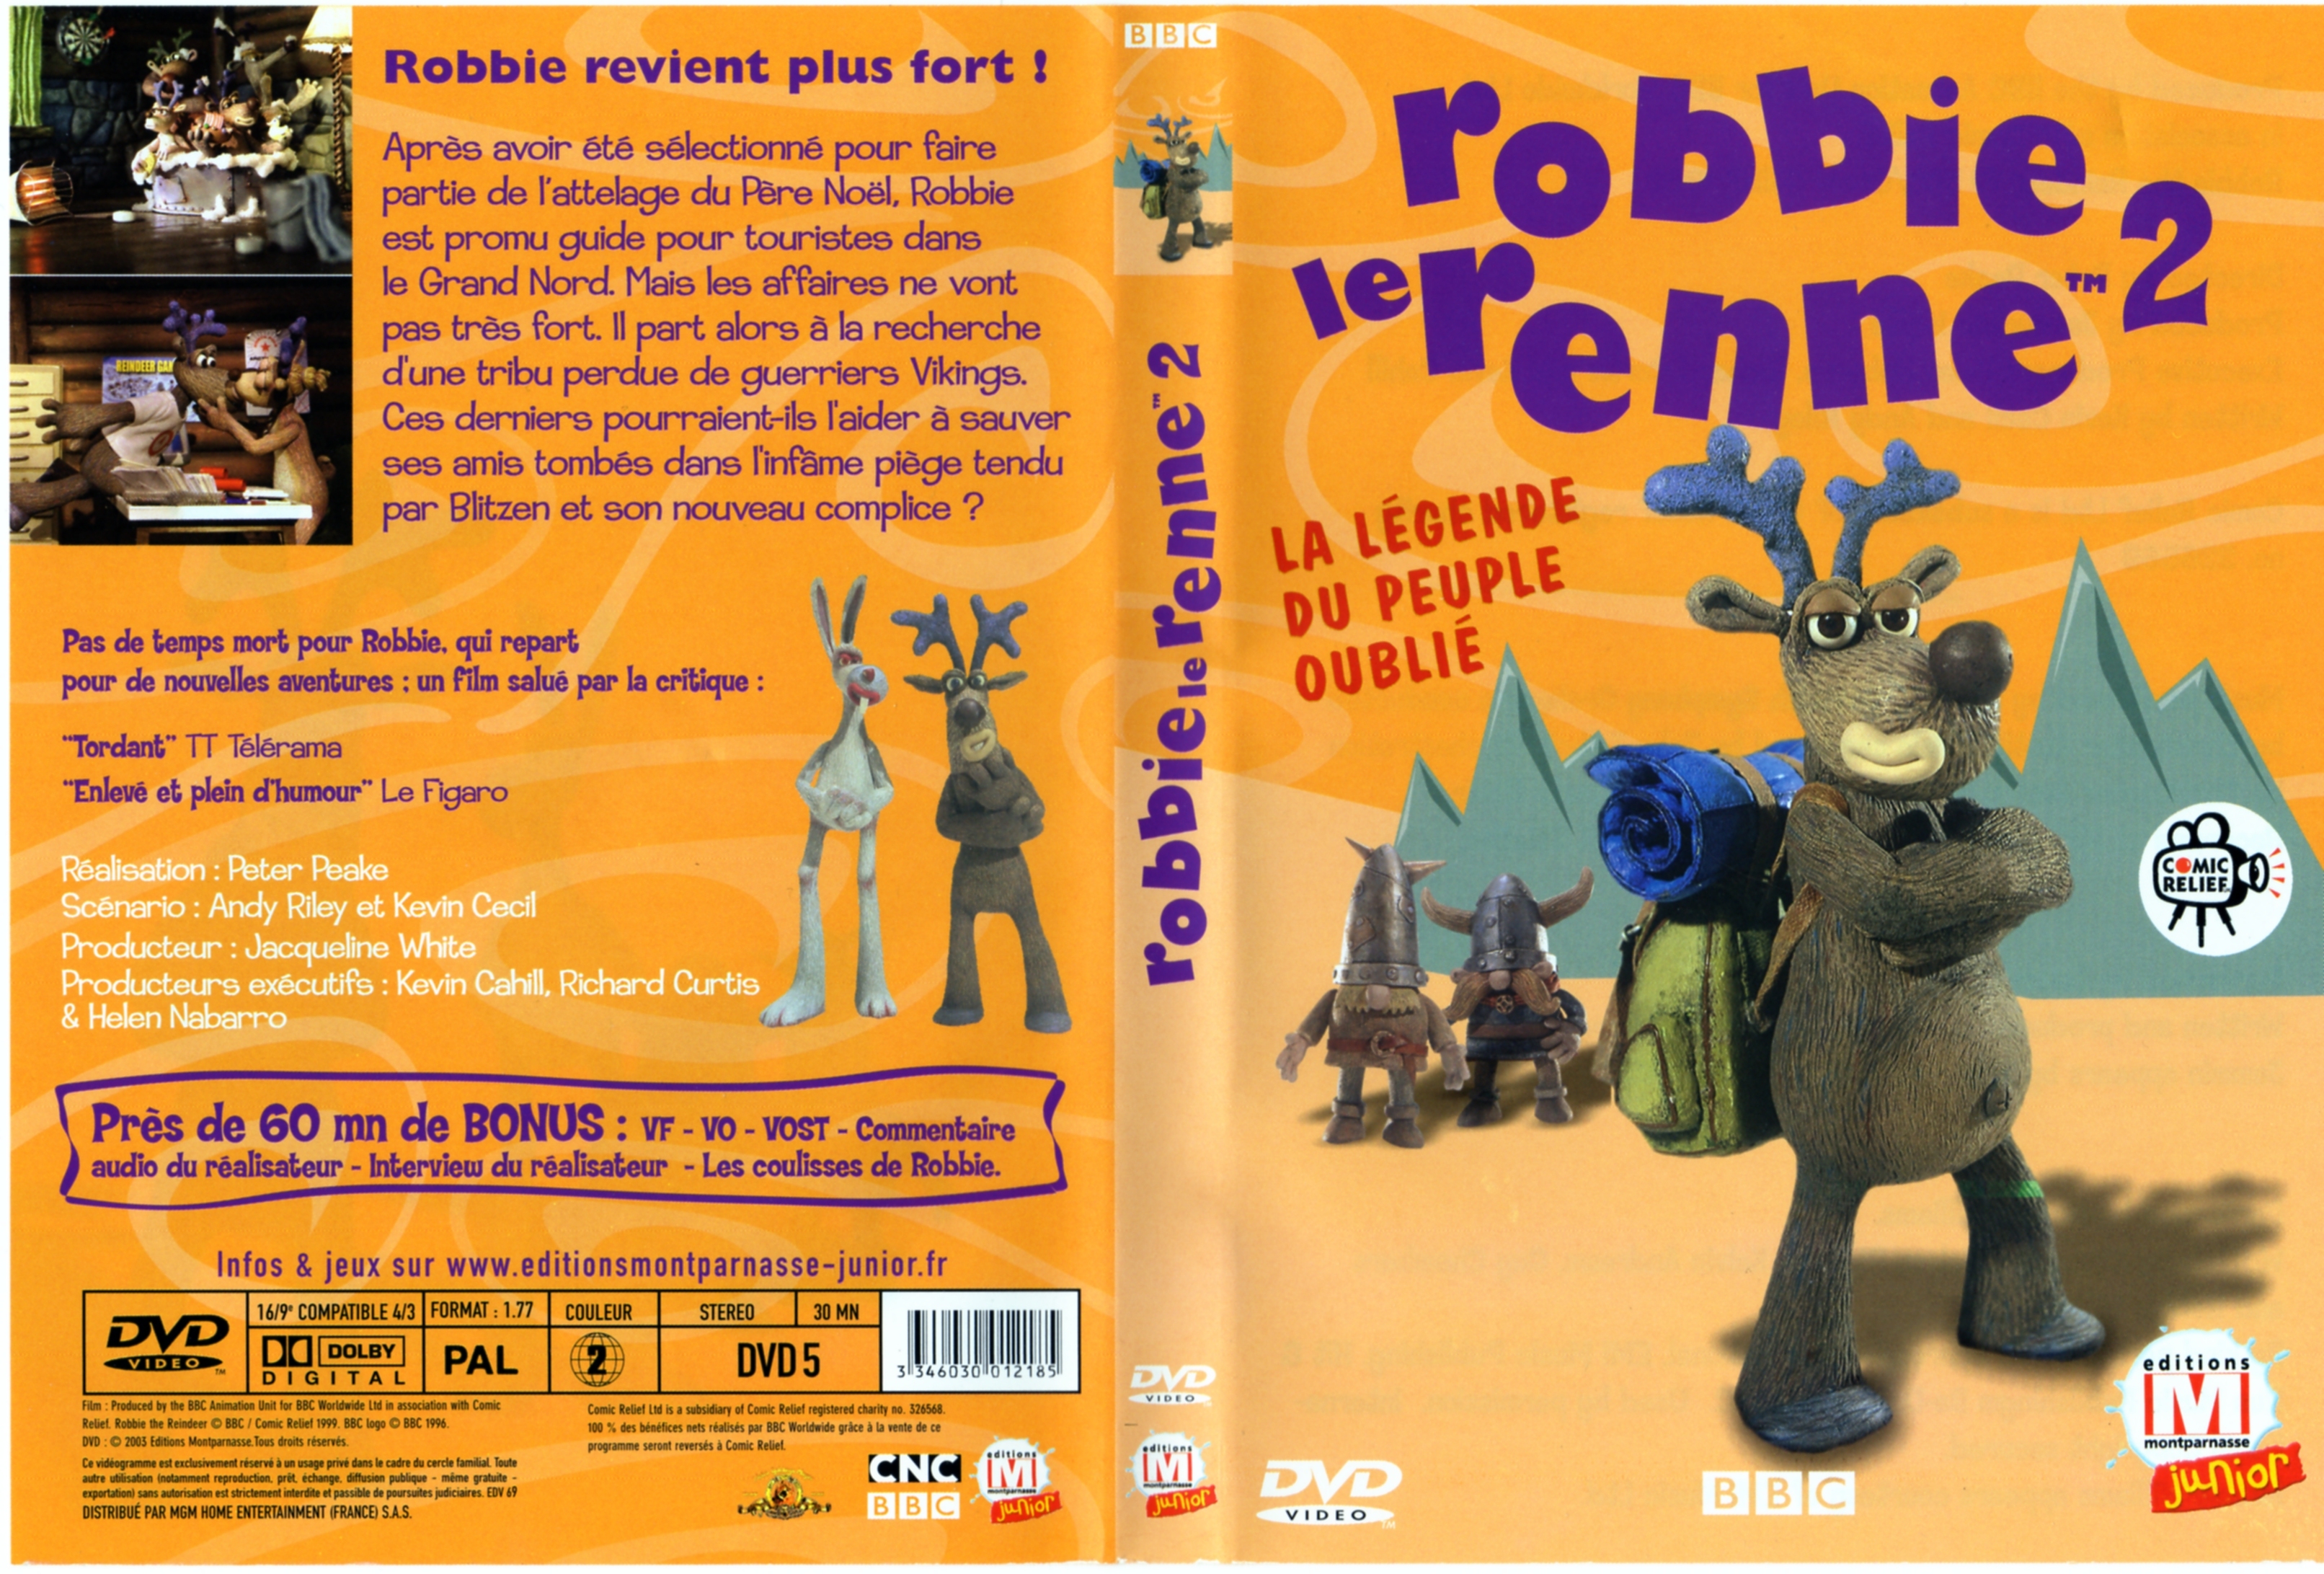 Jaquette DVD Robbie le renne 2